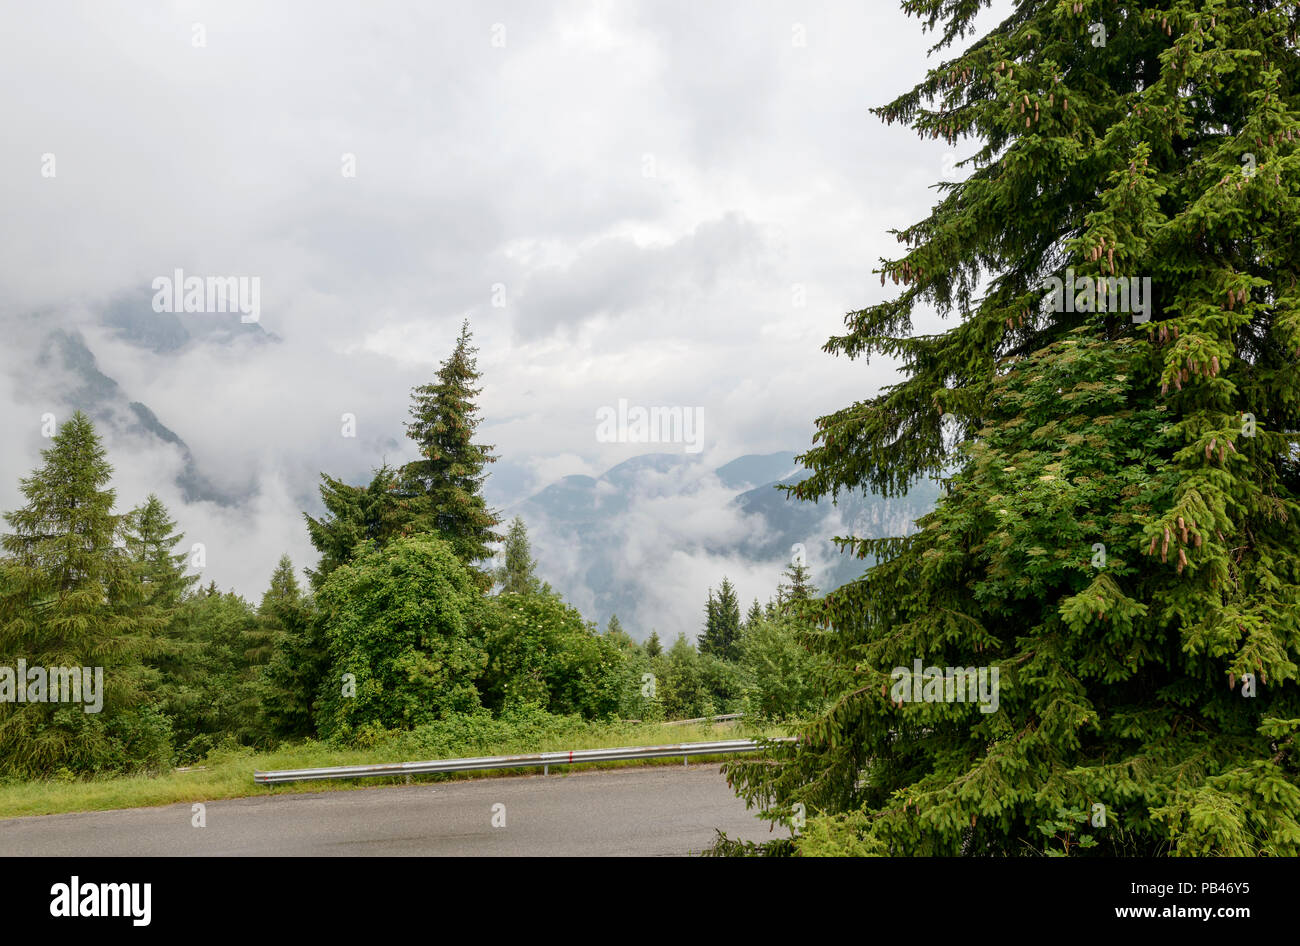 Il paesaggio della Valle di Scalve con boschi di abeti tra le dense nubi, girato a nuvoloso luce estiva da Presolana pass road, Bergamo, Orobie, Lombardia, Italia Foto Stock